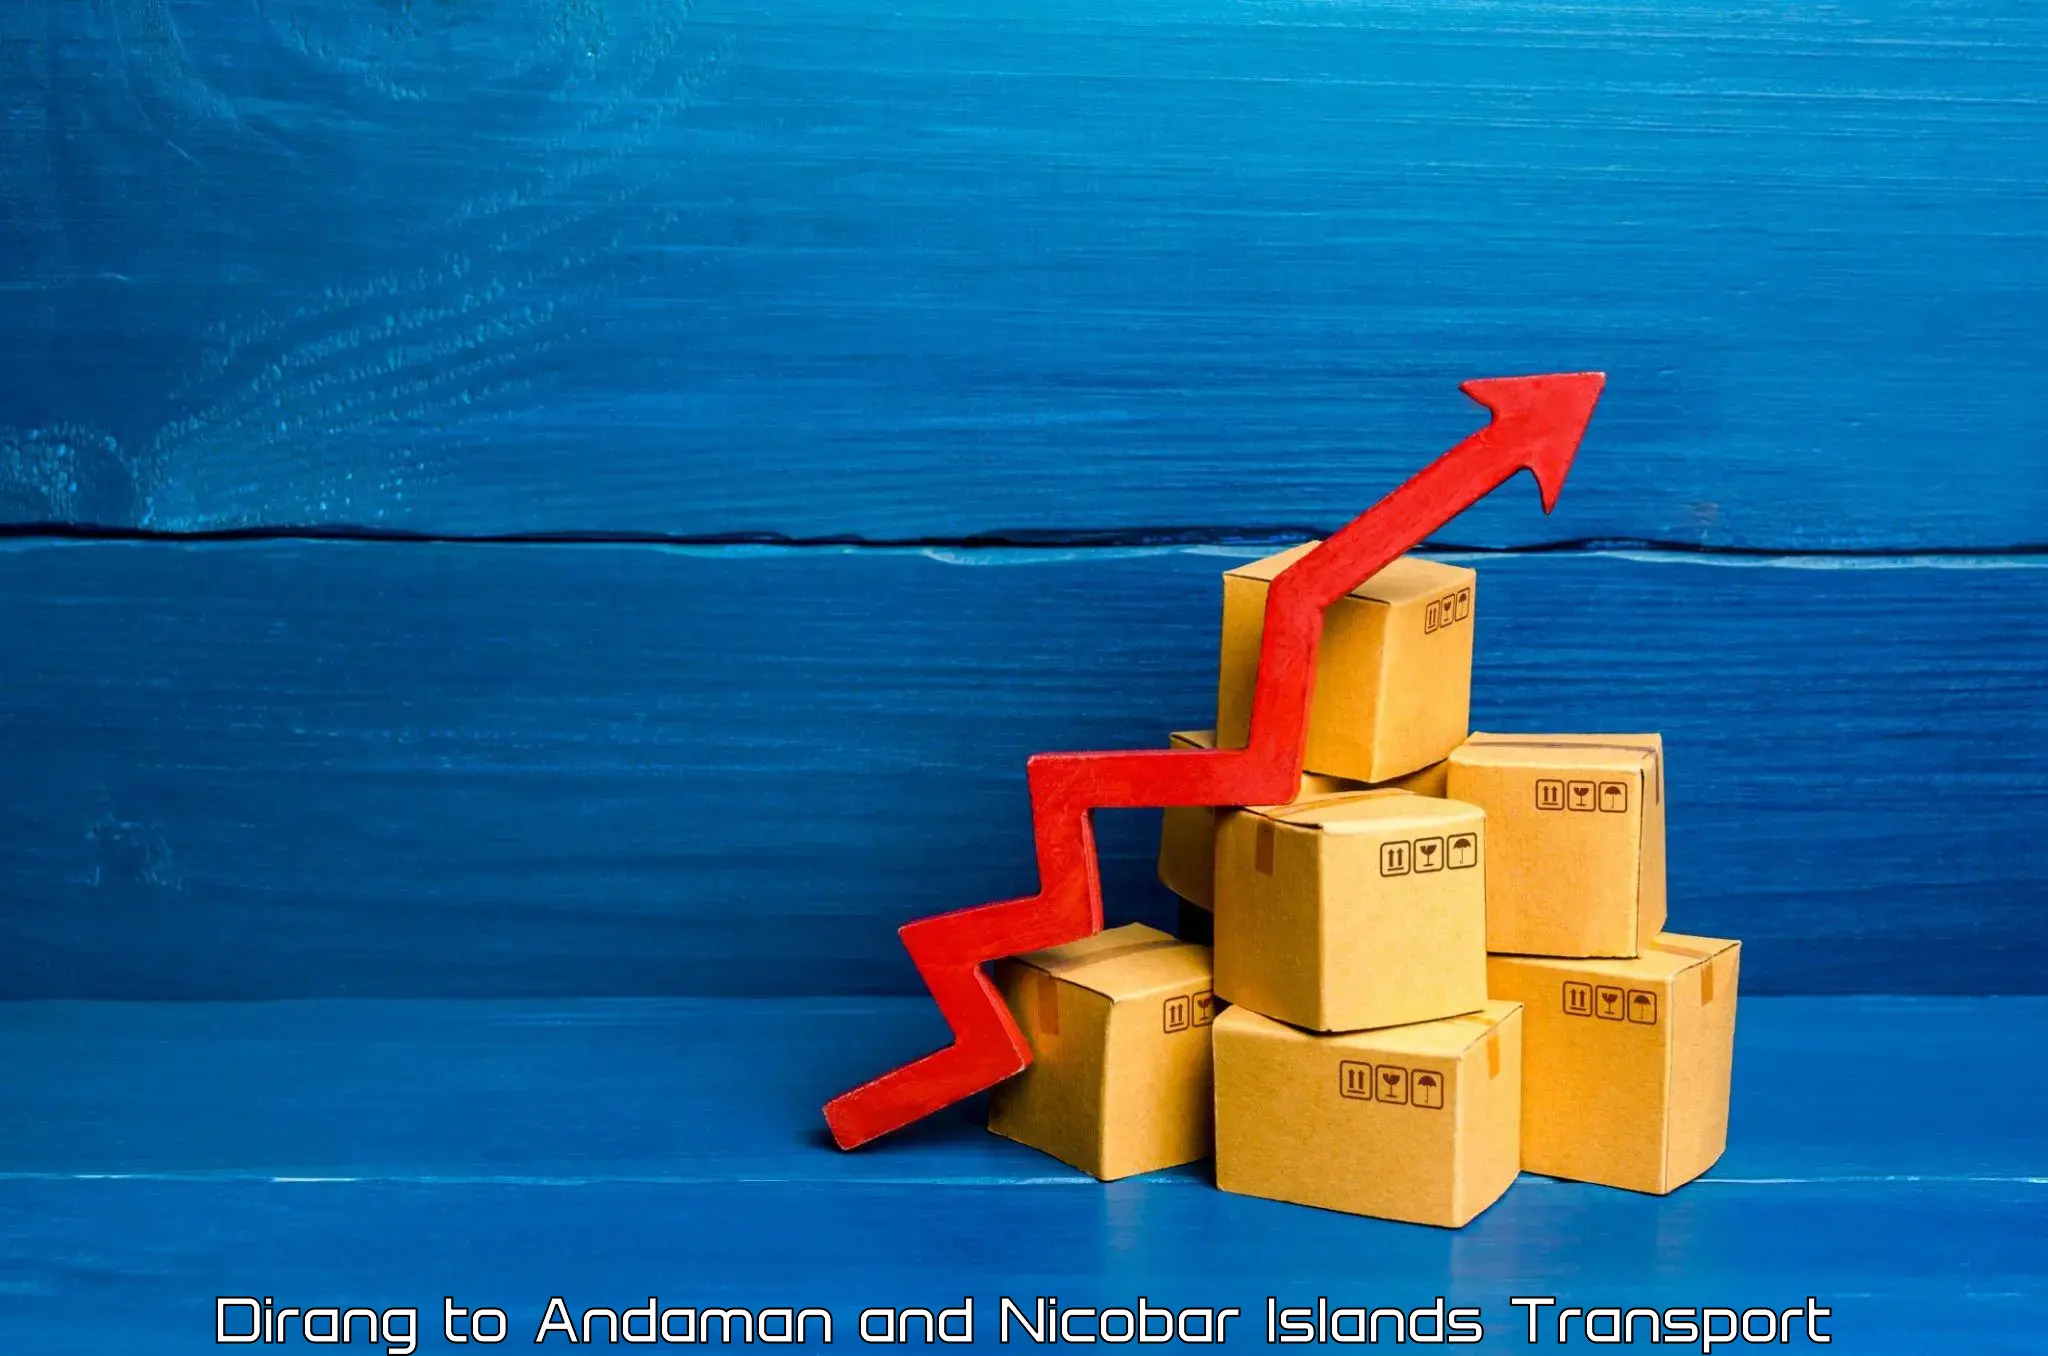 Shipping partner Dirang to Andaman and Nicobar Islands